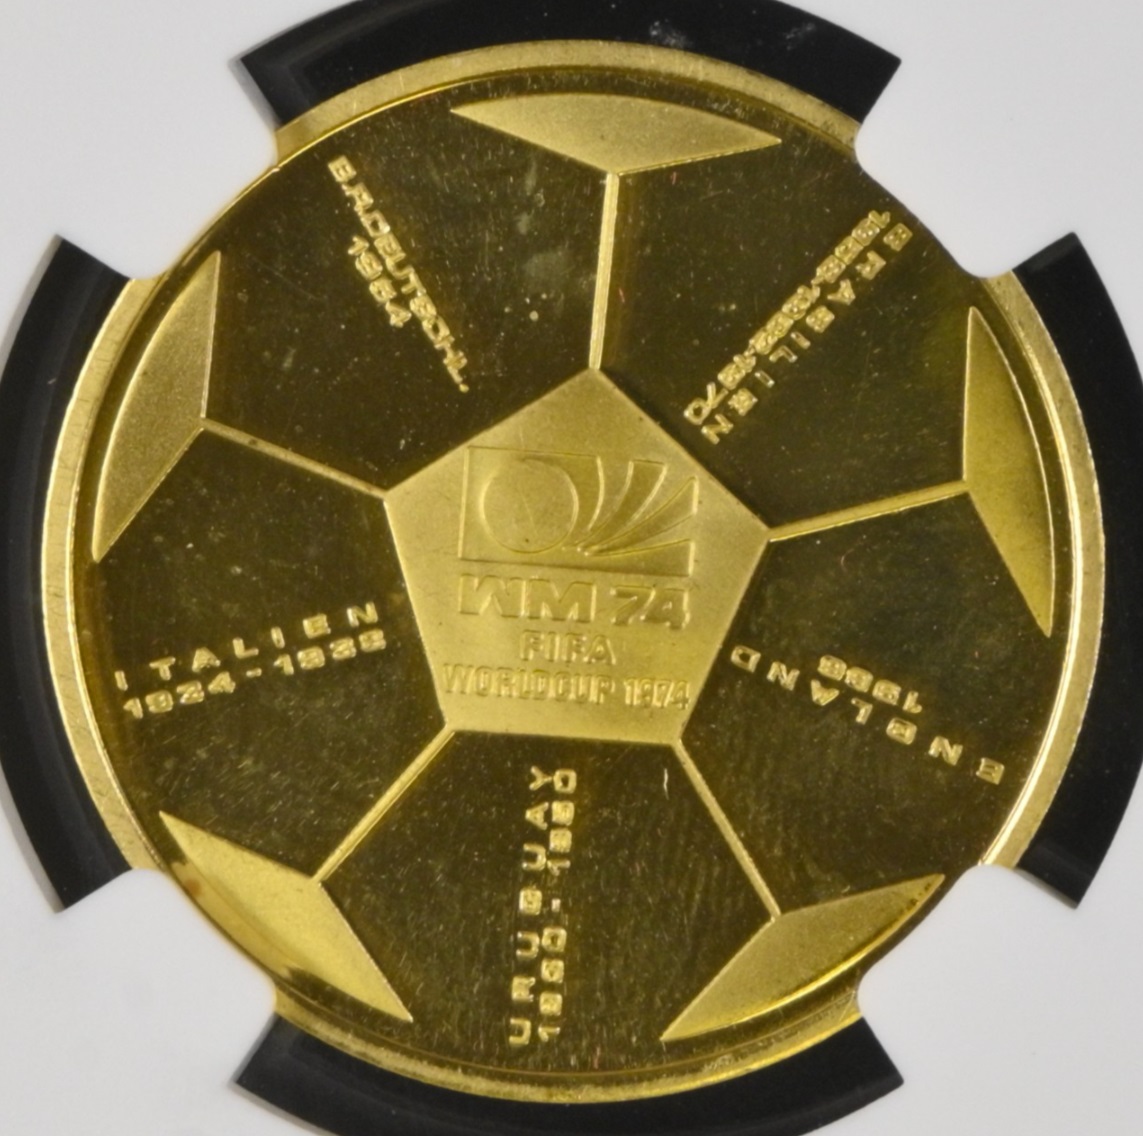  Deutschland Goldmedaille 1974 | NGC PF67 ULTRA CAMEO TOP POP | FiFa Fußball Weltmeisterschaft   